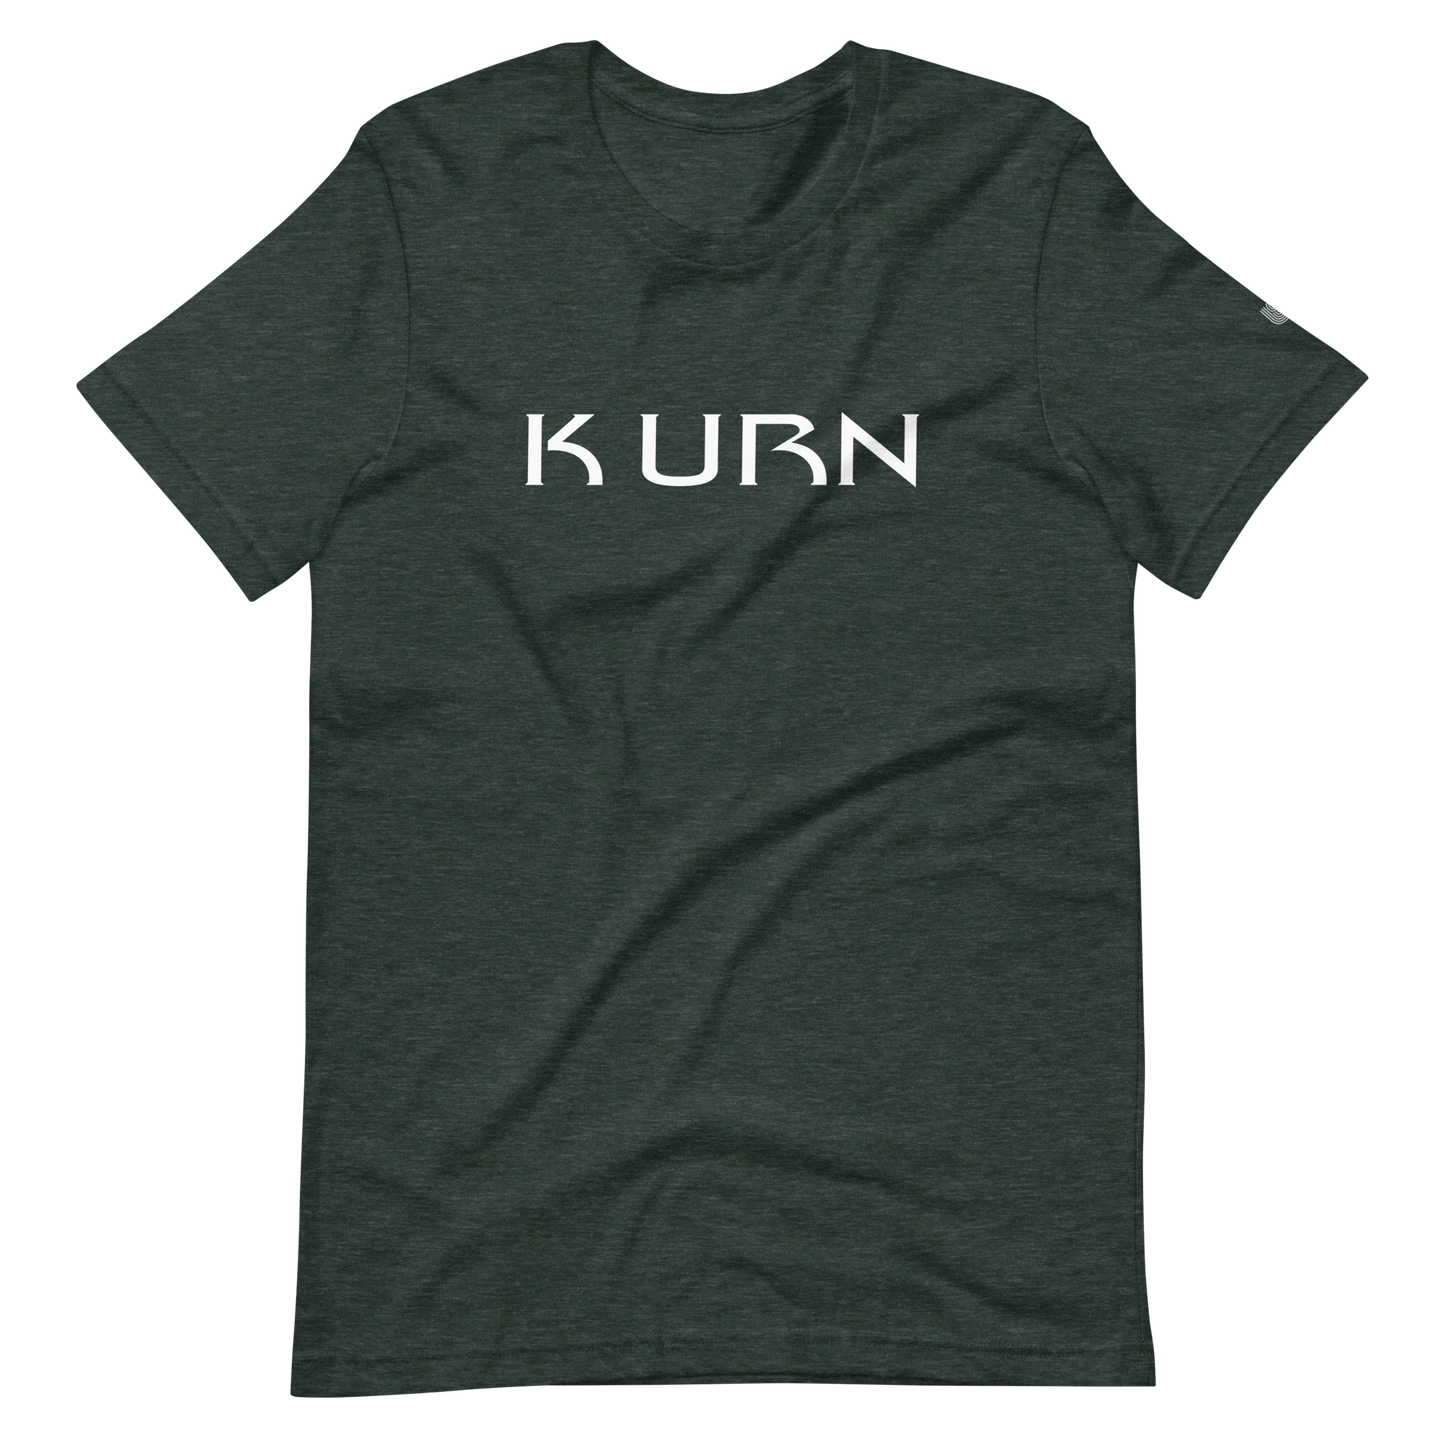 K URN T-Shirt